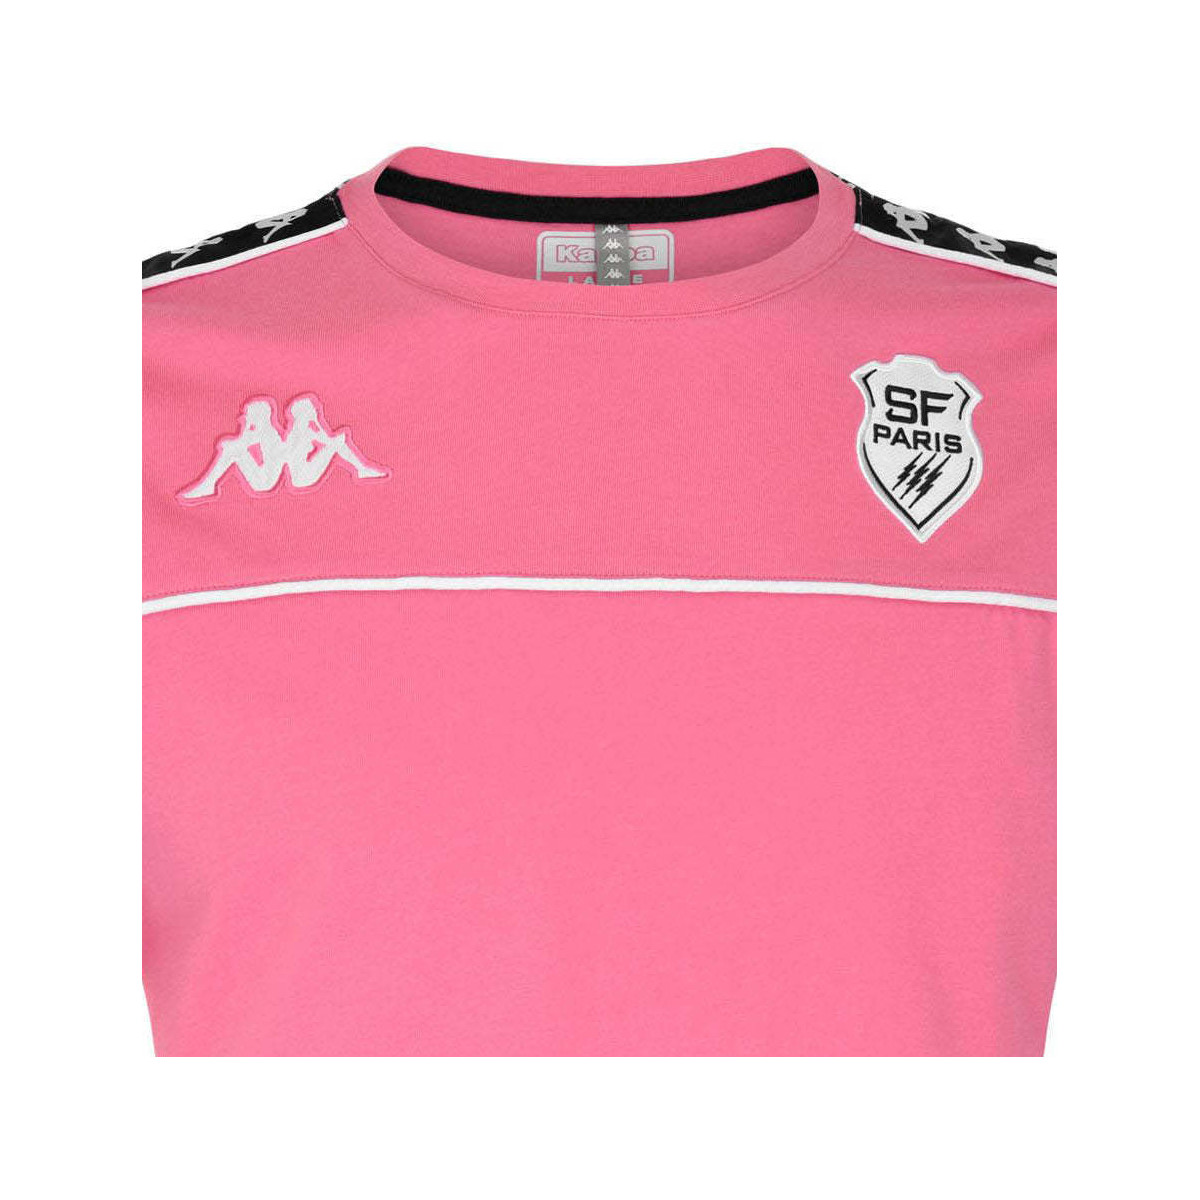 Kappa Rose T-shirt Arari Stade Français Paris vRjr2PqJ